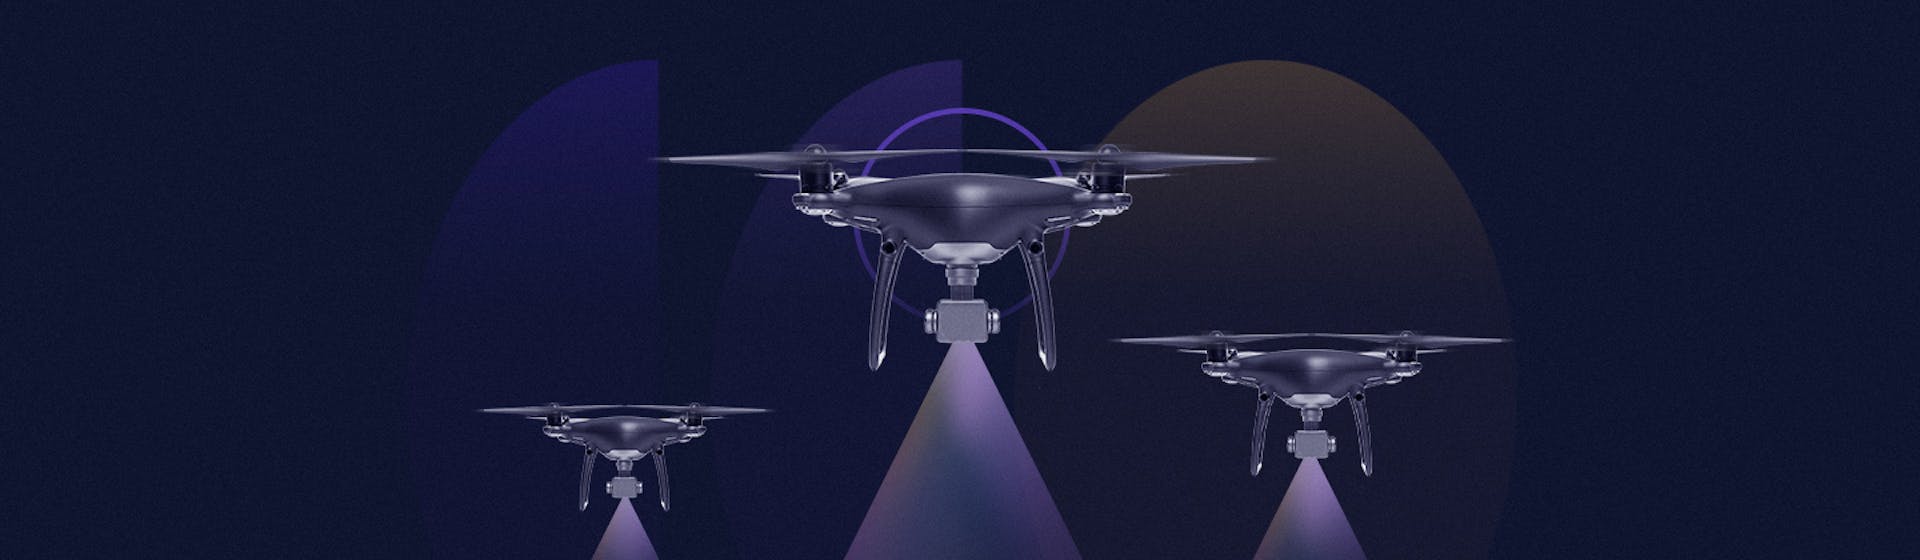 Fotogrametría con drones: reconstruye objetos y escenarios a partir de tomas aéreas